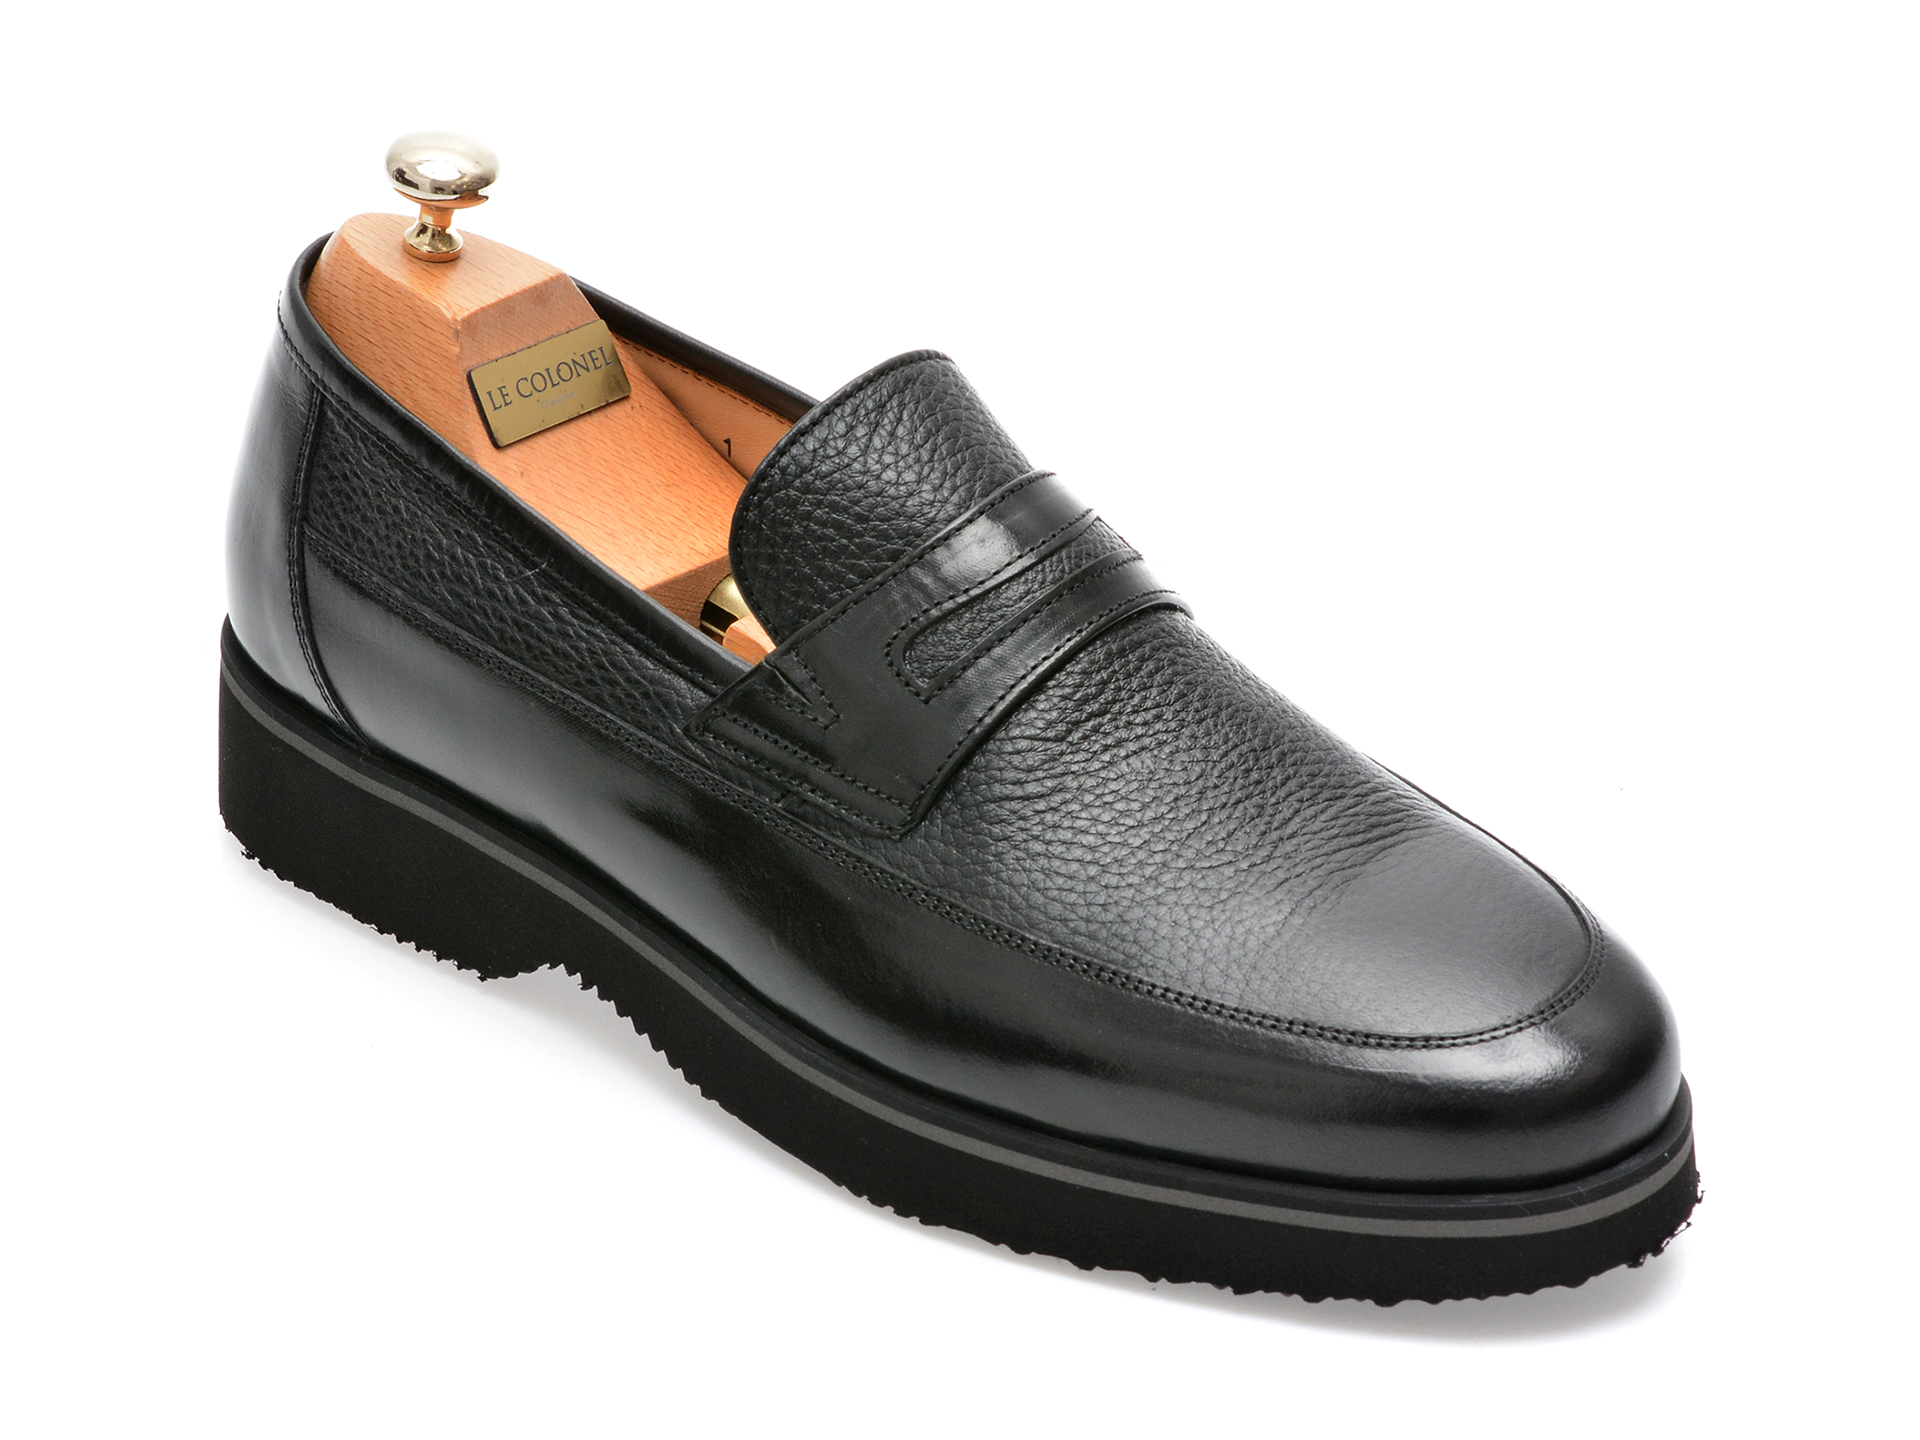 Pantofi LE COLONEL negri, 66101, din piele naturala barbati 2023-03-24